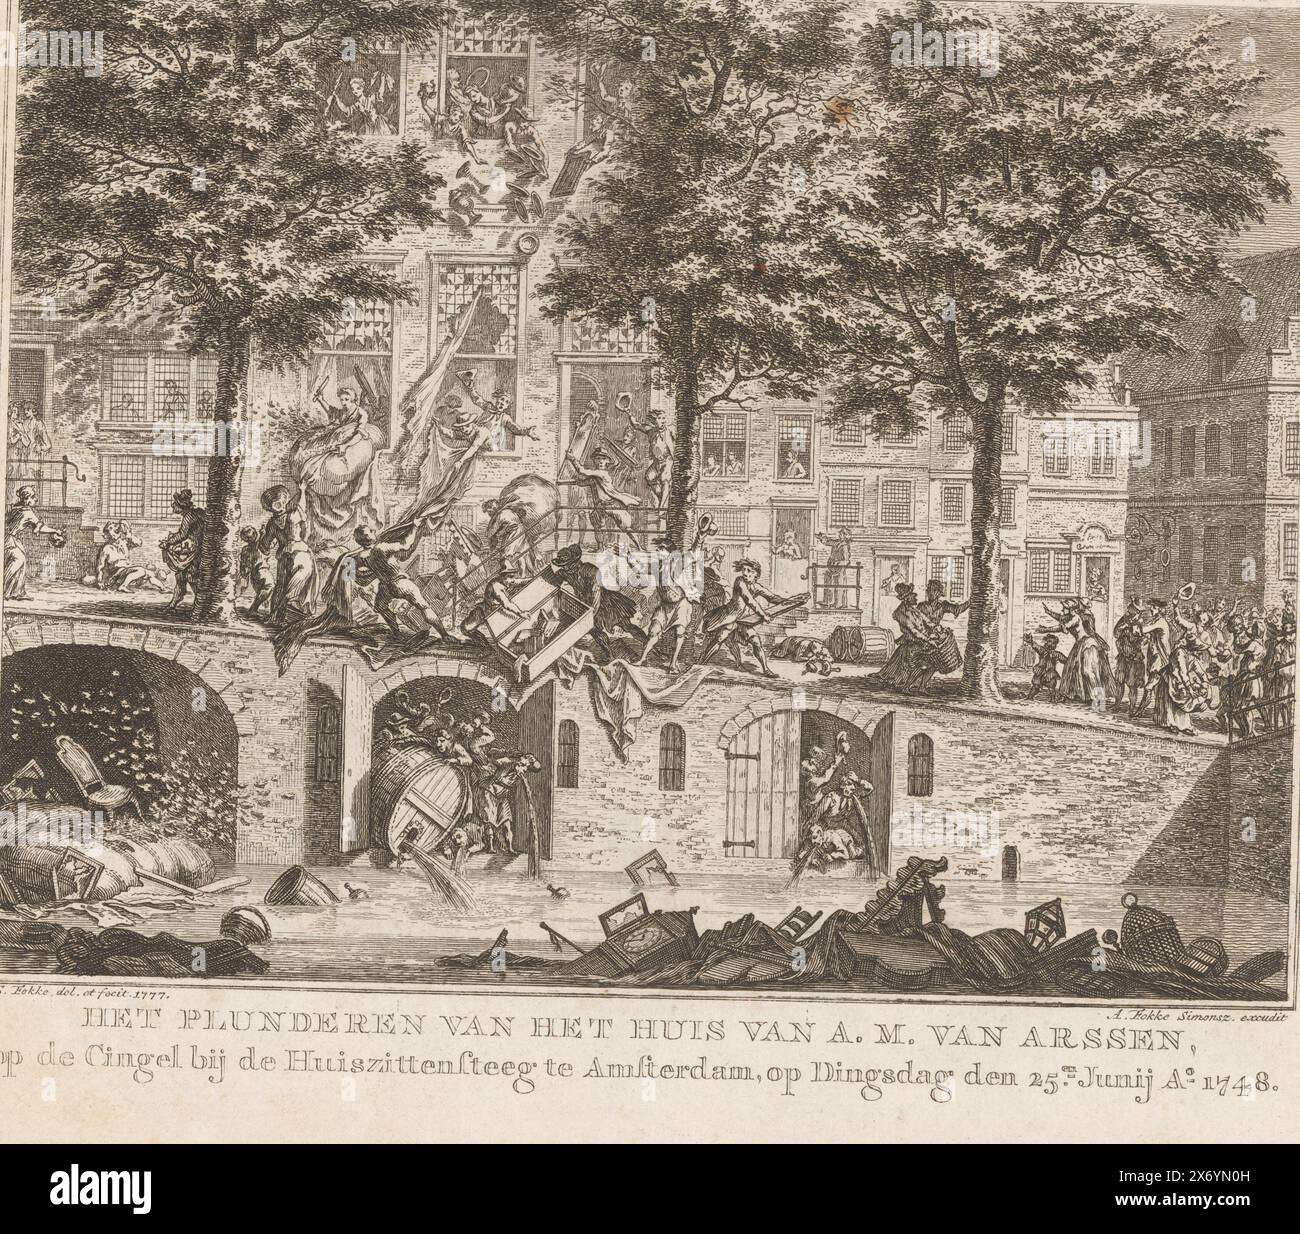 Pillage de la maison de A.M. van Arssen à Amsterdam, 1748, pillage de la maison de A.M. van Arssen, sur le Cingel près du Huiszitsteeg à Amsterdam, le mardi 25 juin Ao 1748 (titre sur objet), le pillage de la maison du locataire fiscal A.M. van Arssen et des entrepôts et caves en dessous à Singel 187 lors de l'émeute de Pachter, le 25 juin 1748. De la maison, les personnages jettent toutes sortes d'articles ménagers dans la rue et dans le canal., imprimerie, imprimeur : Simon Fokke, (mentionné sur l'objet), d'après son propre design par : Simon Fokke, (mentionné sur l'objet), éditeur : Arend Fokke Banque D'Images